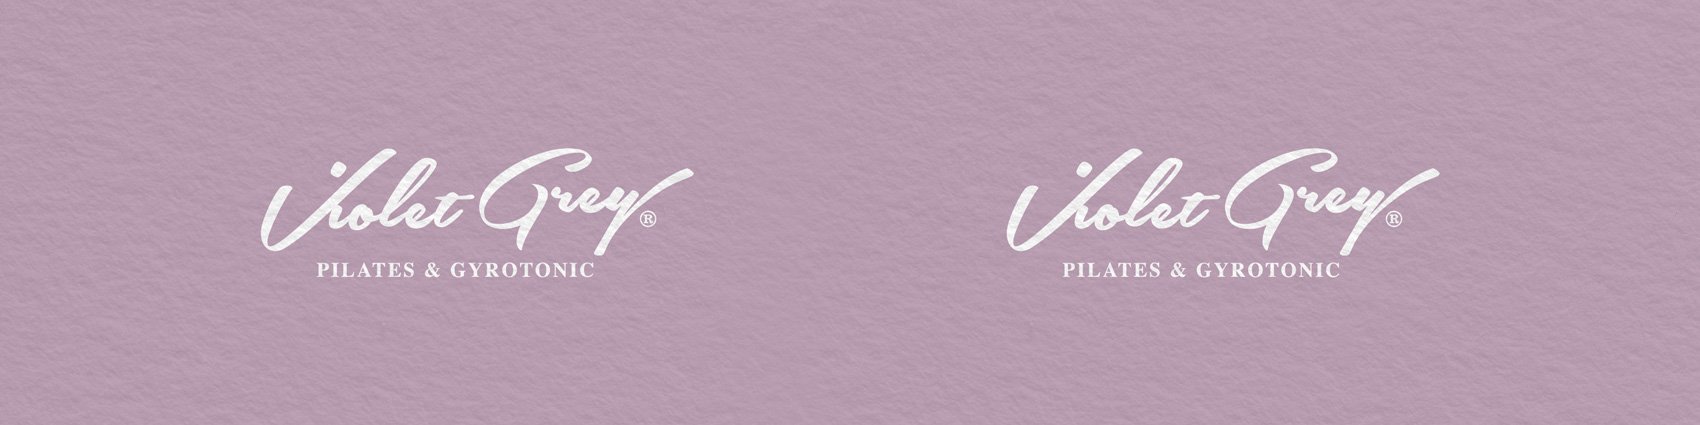 VioletGrey-logo-reverse.jpg